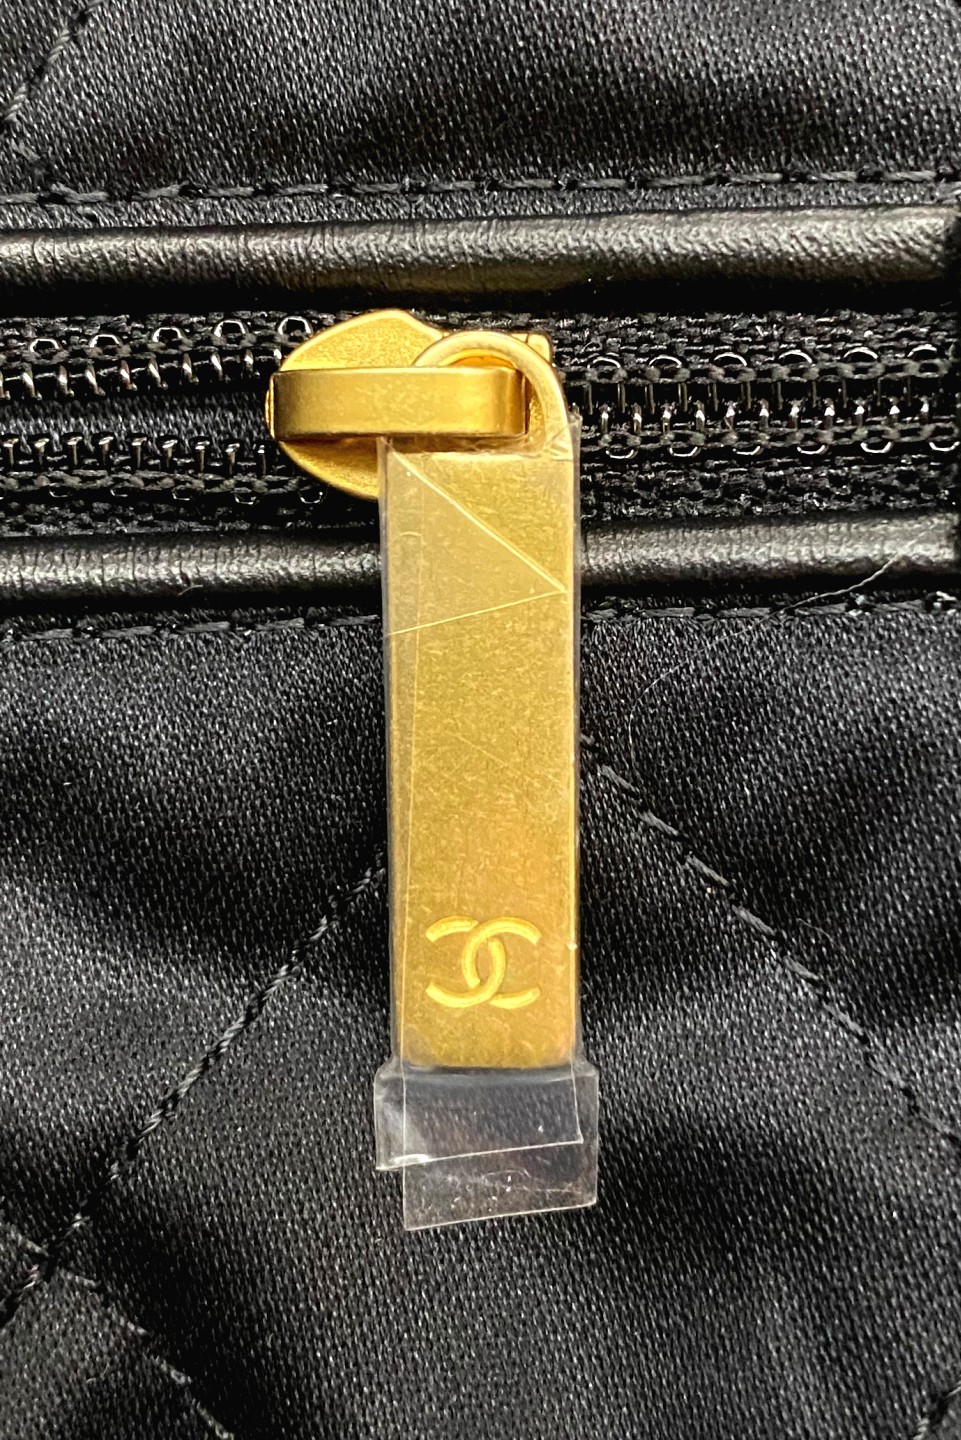 How to spot a fake Chanel 22 bag? (2023 updated)-Best Quality Fake designer Bag Review, Replica designer bag ru